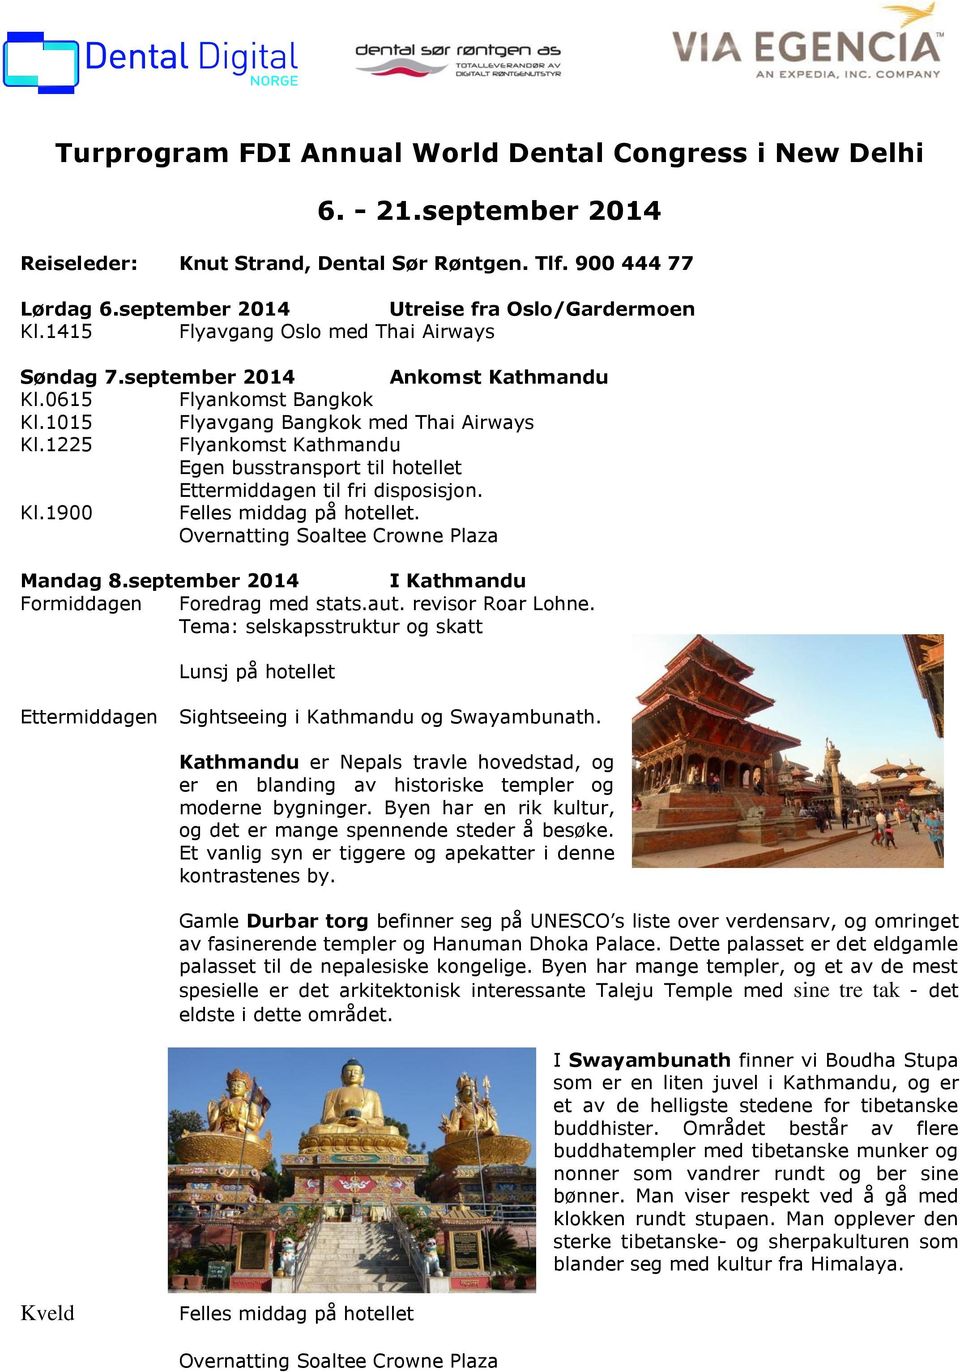 1225 Flyankomst Kathmandu Egen busstransport til hotellet en til fri disposisjon. Kl.1900 Felles middag på hotellet. Mandag 8.september 2014 I Kathmandu Formiddagen Foredrag med stats.aut.